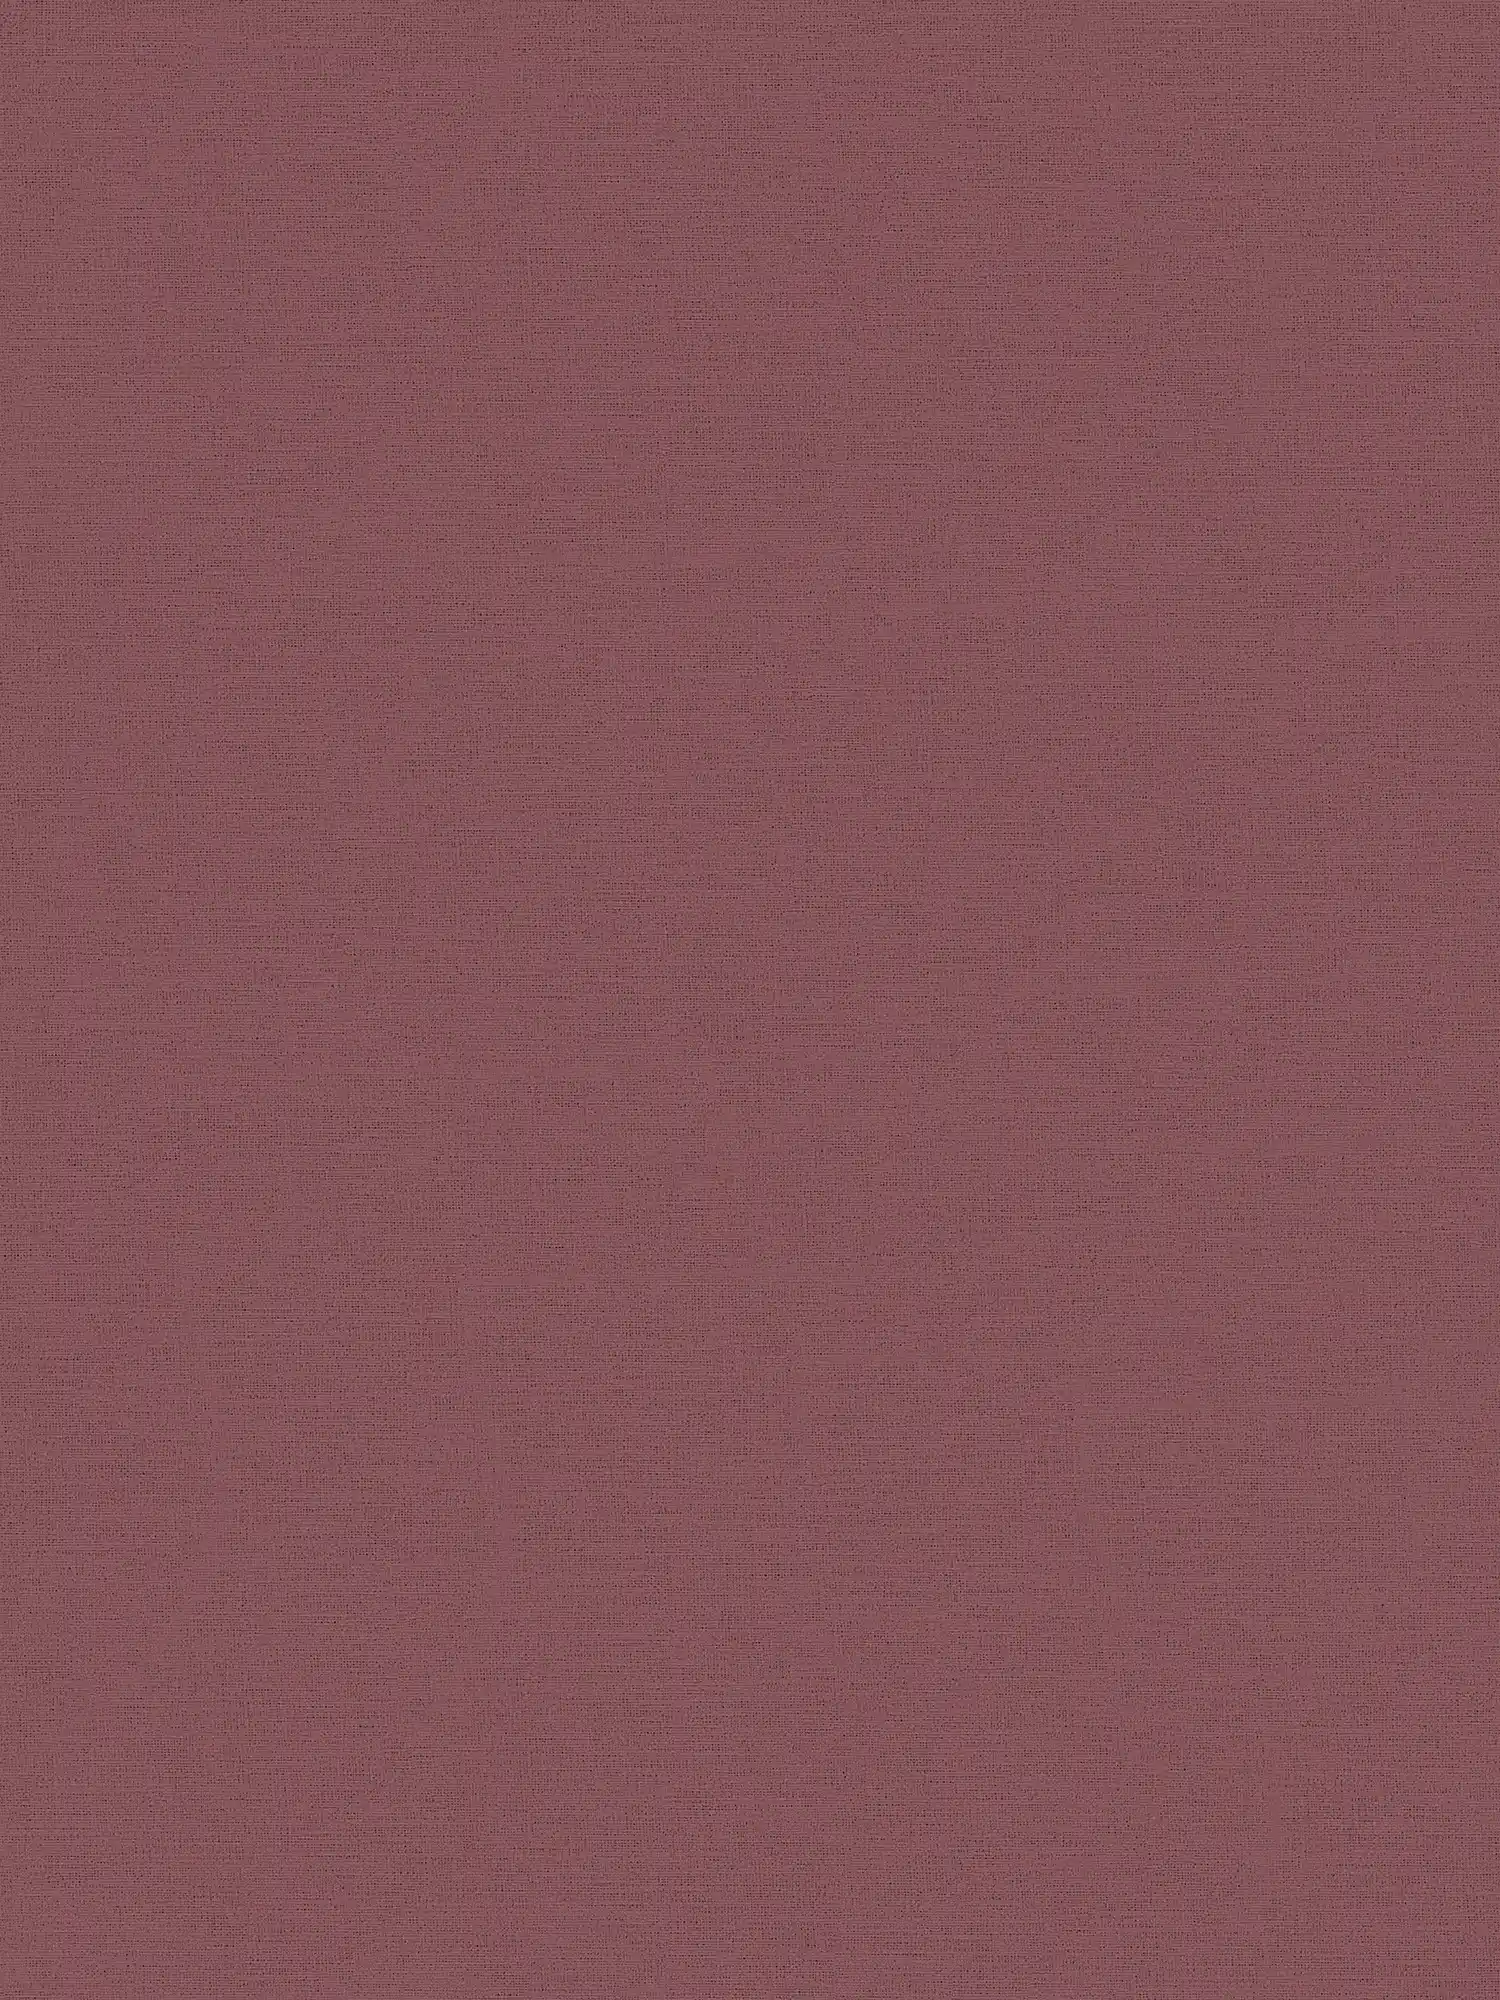 Plain Behang Bordeaux Rood met Textiel Optiek
